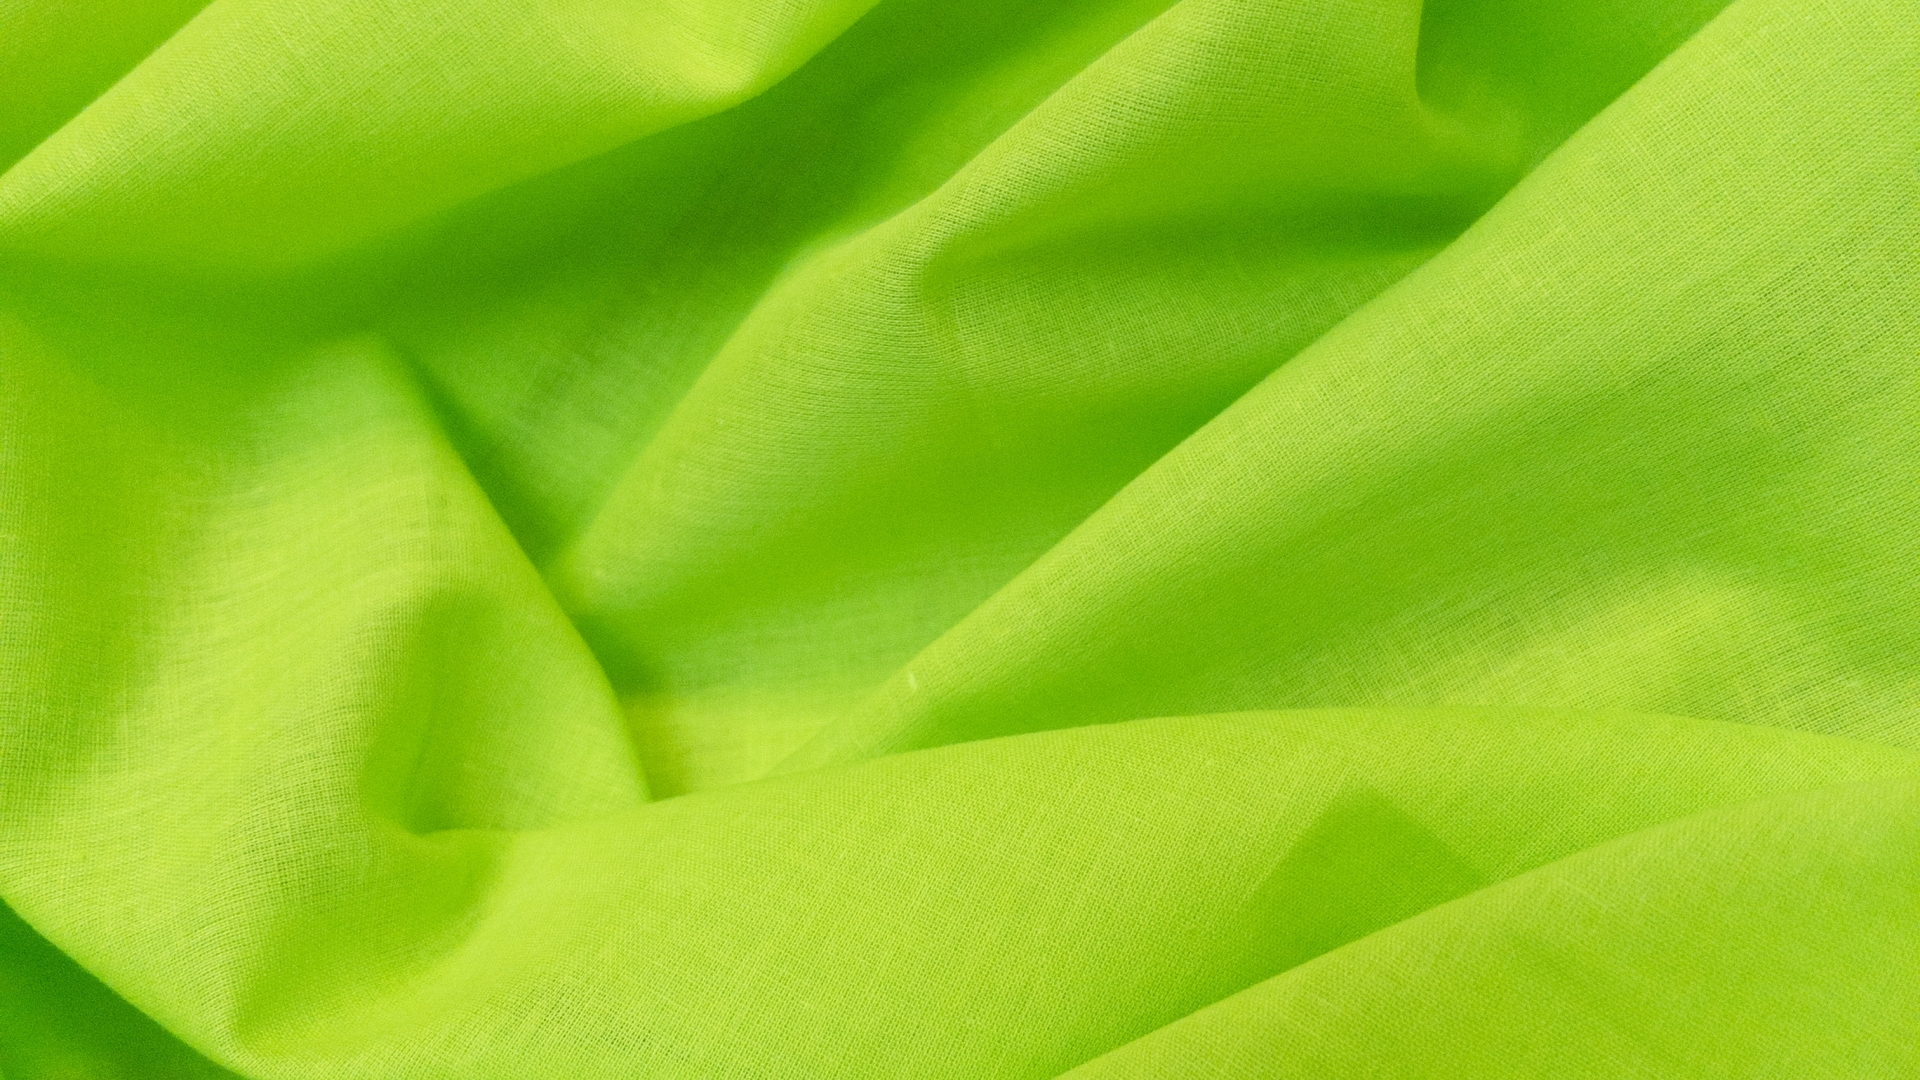 Однотонный батист неоново-зеленого цвета. Идеален в качестве компаньона или подкладки под шитье арт 436796. В основе хлопок, очень мягкий, изящный, колом не стоит. Также из этого батиста получаются очень симпатичные летние рубашки и присборенные юбки.